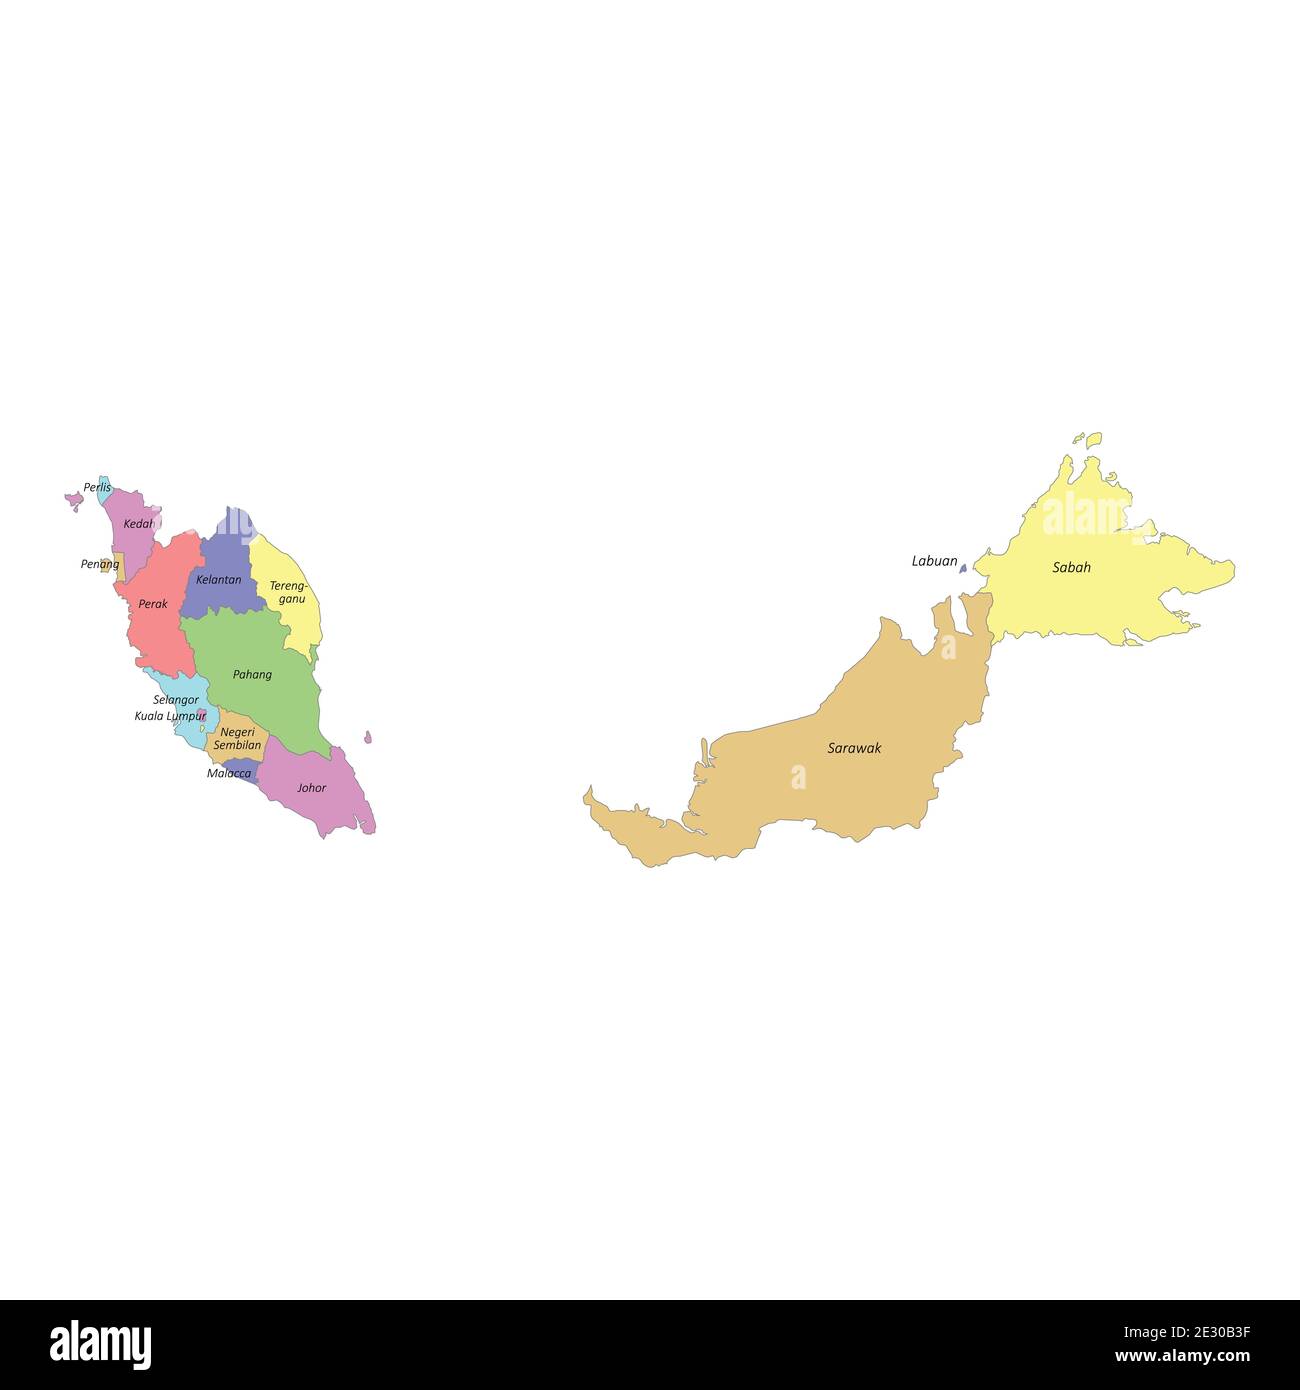 Малайзия регион. Регионы Малайзии. Карта Малайзии с регионами.